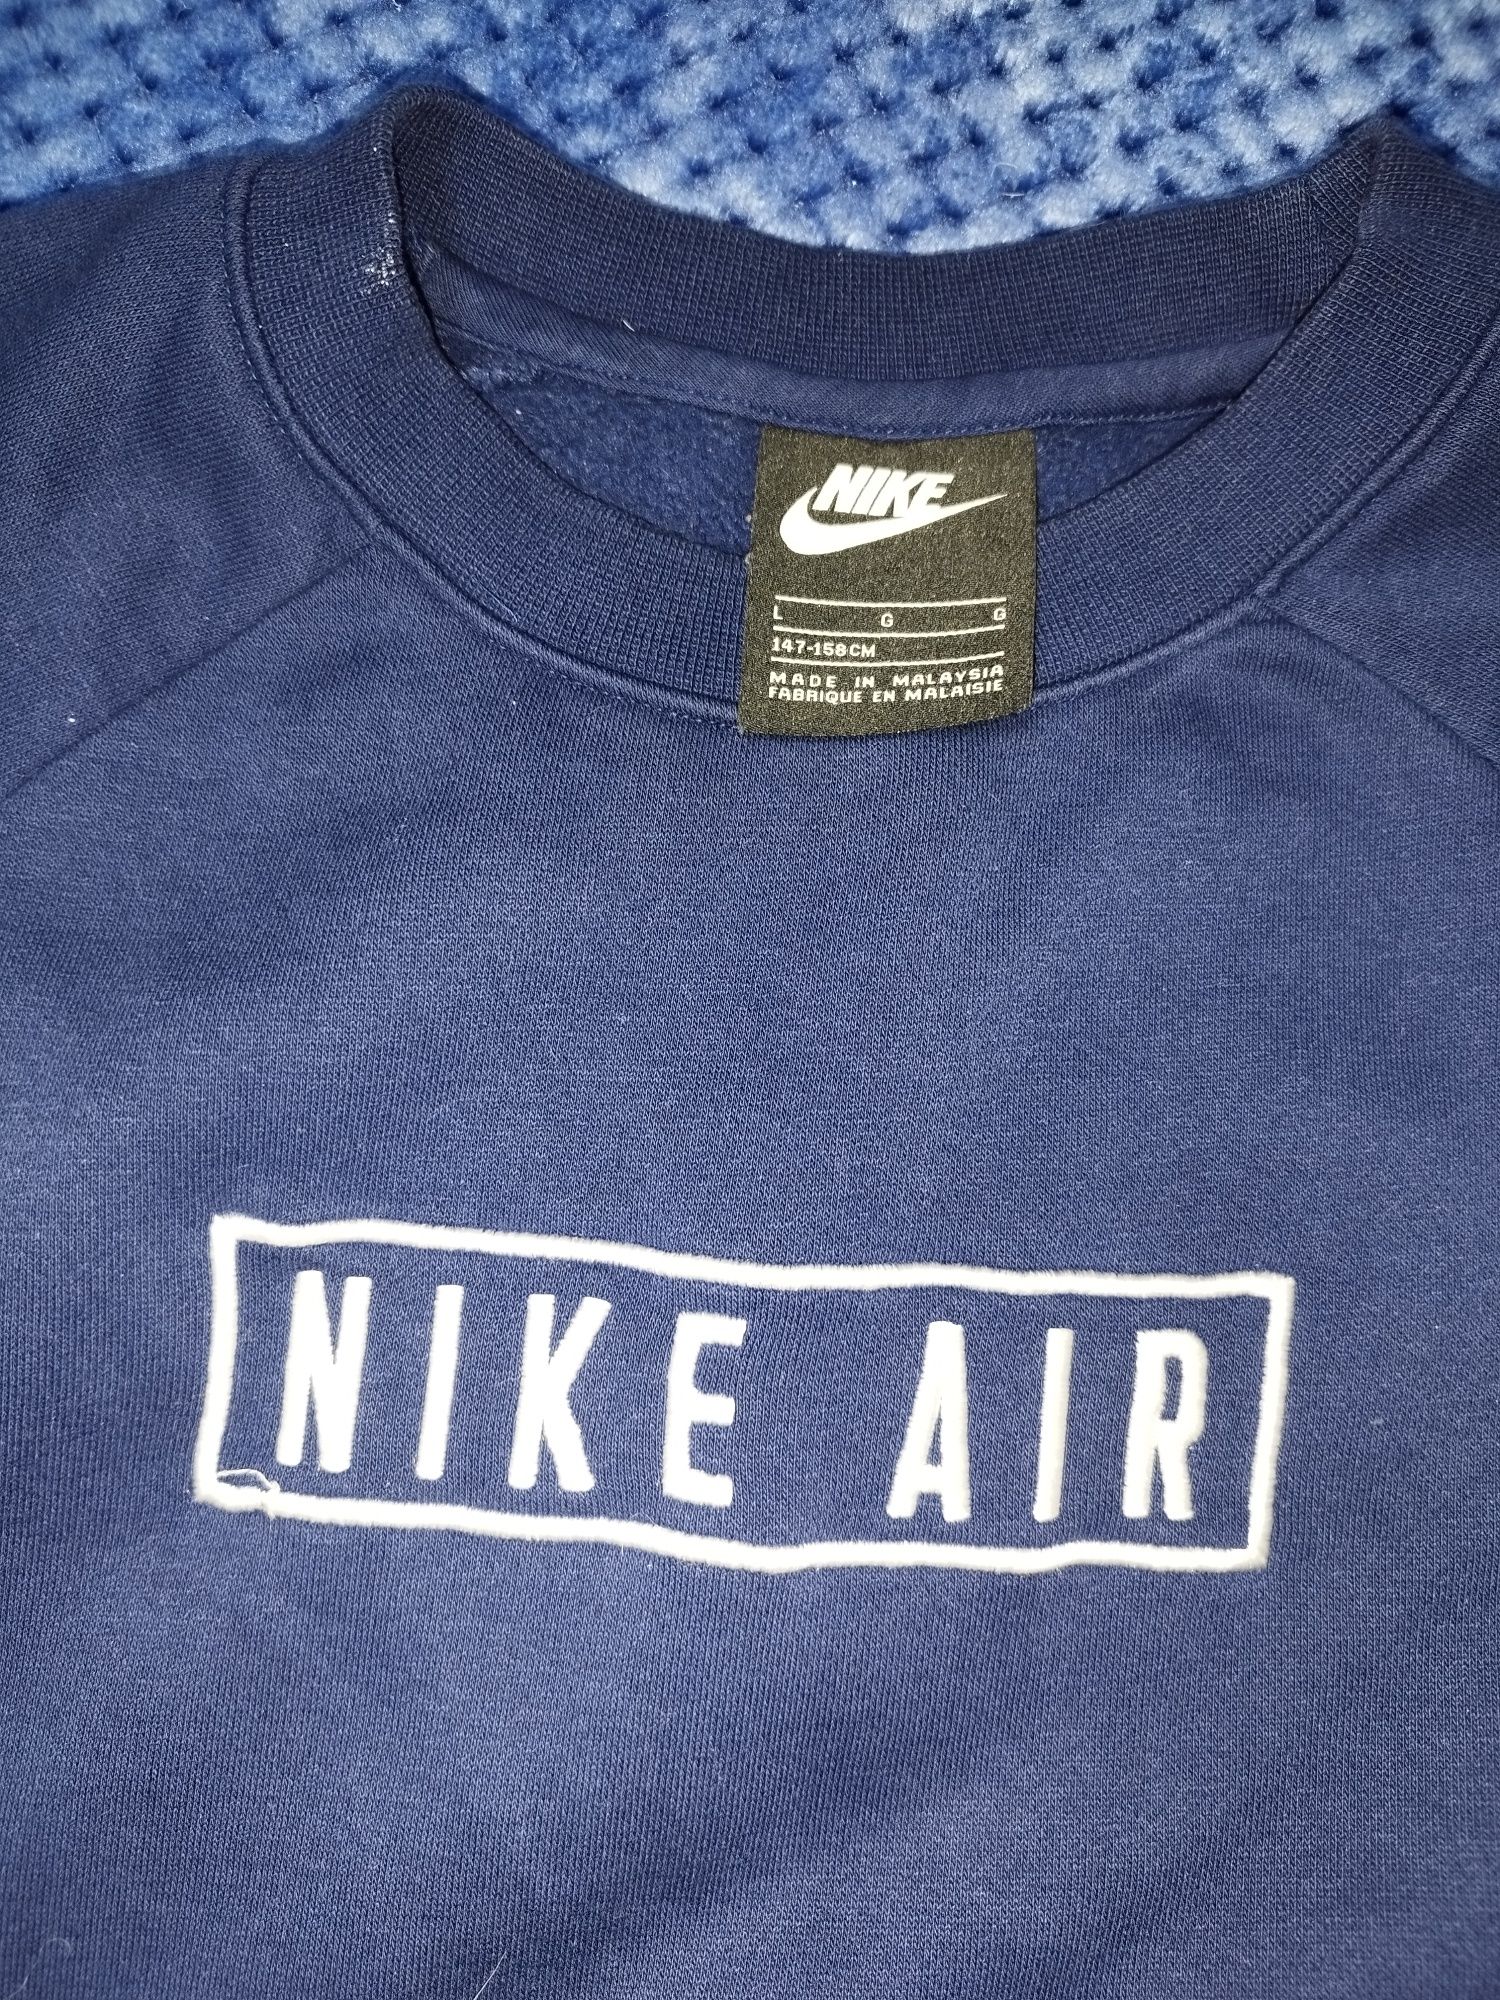 Sweat Nike rapaz azul